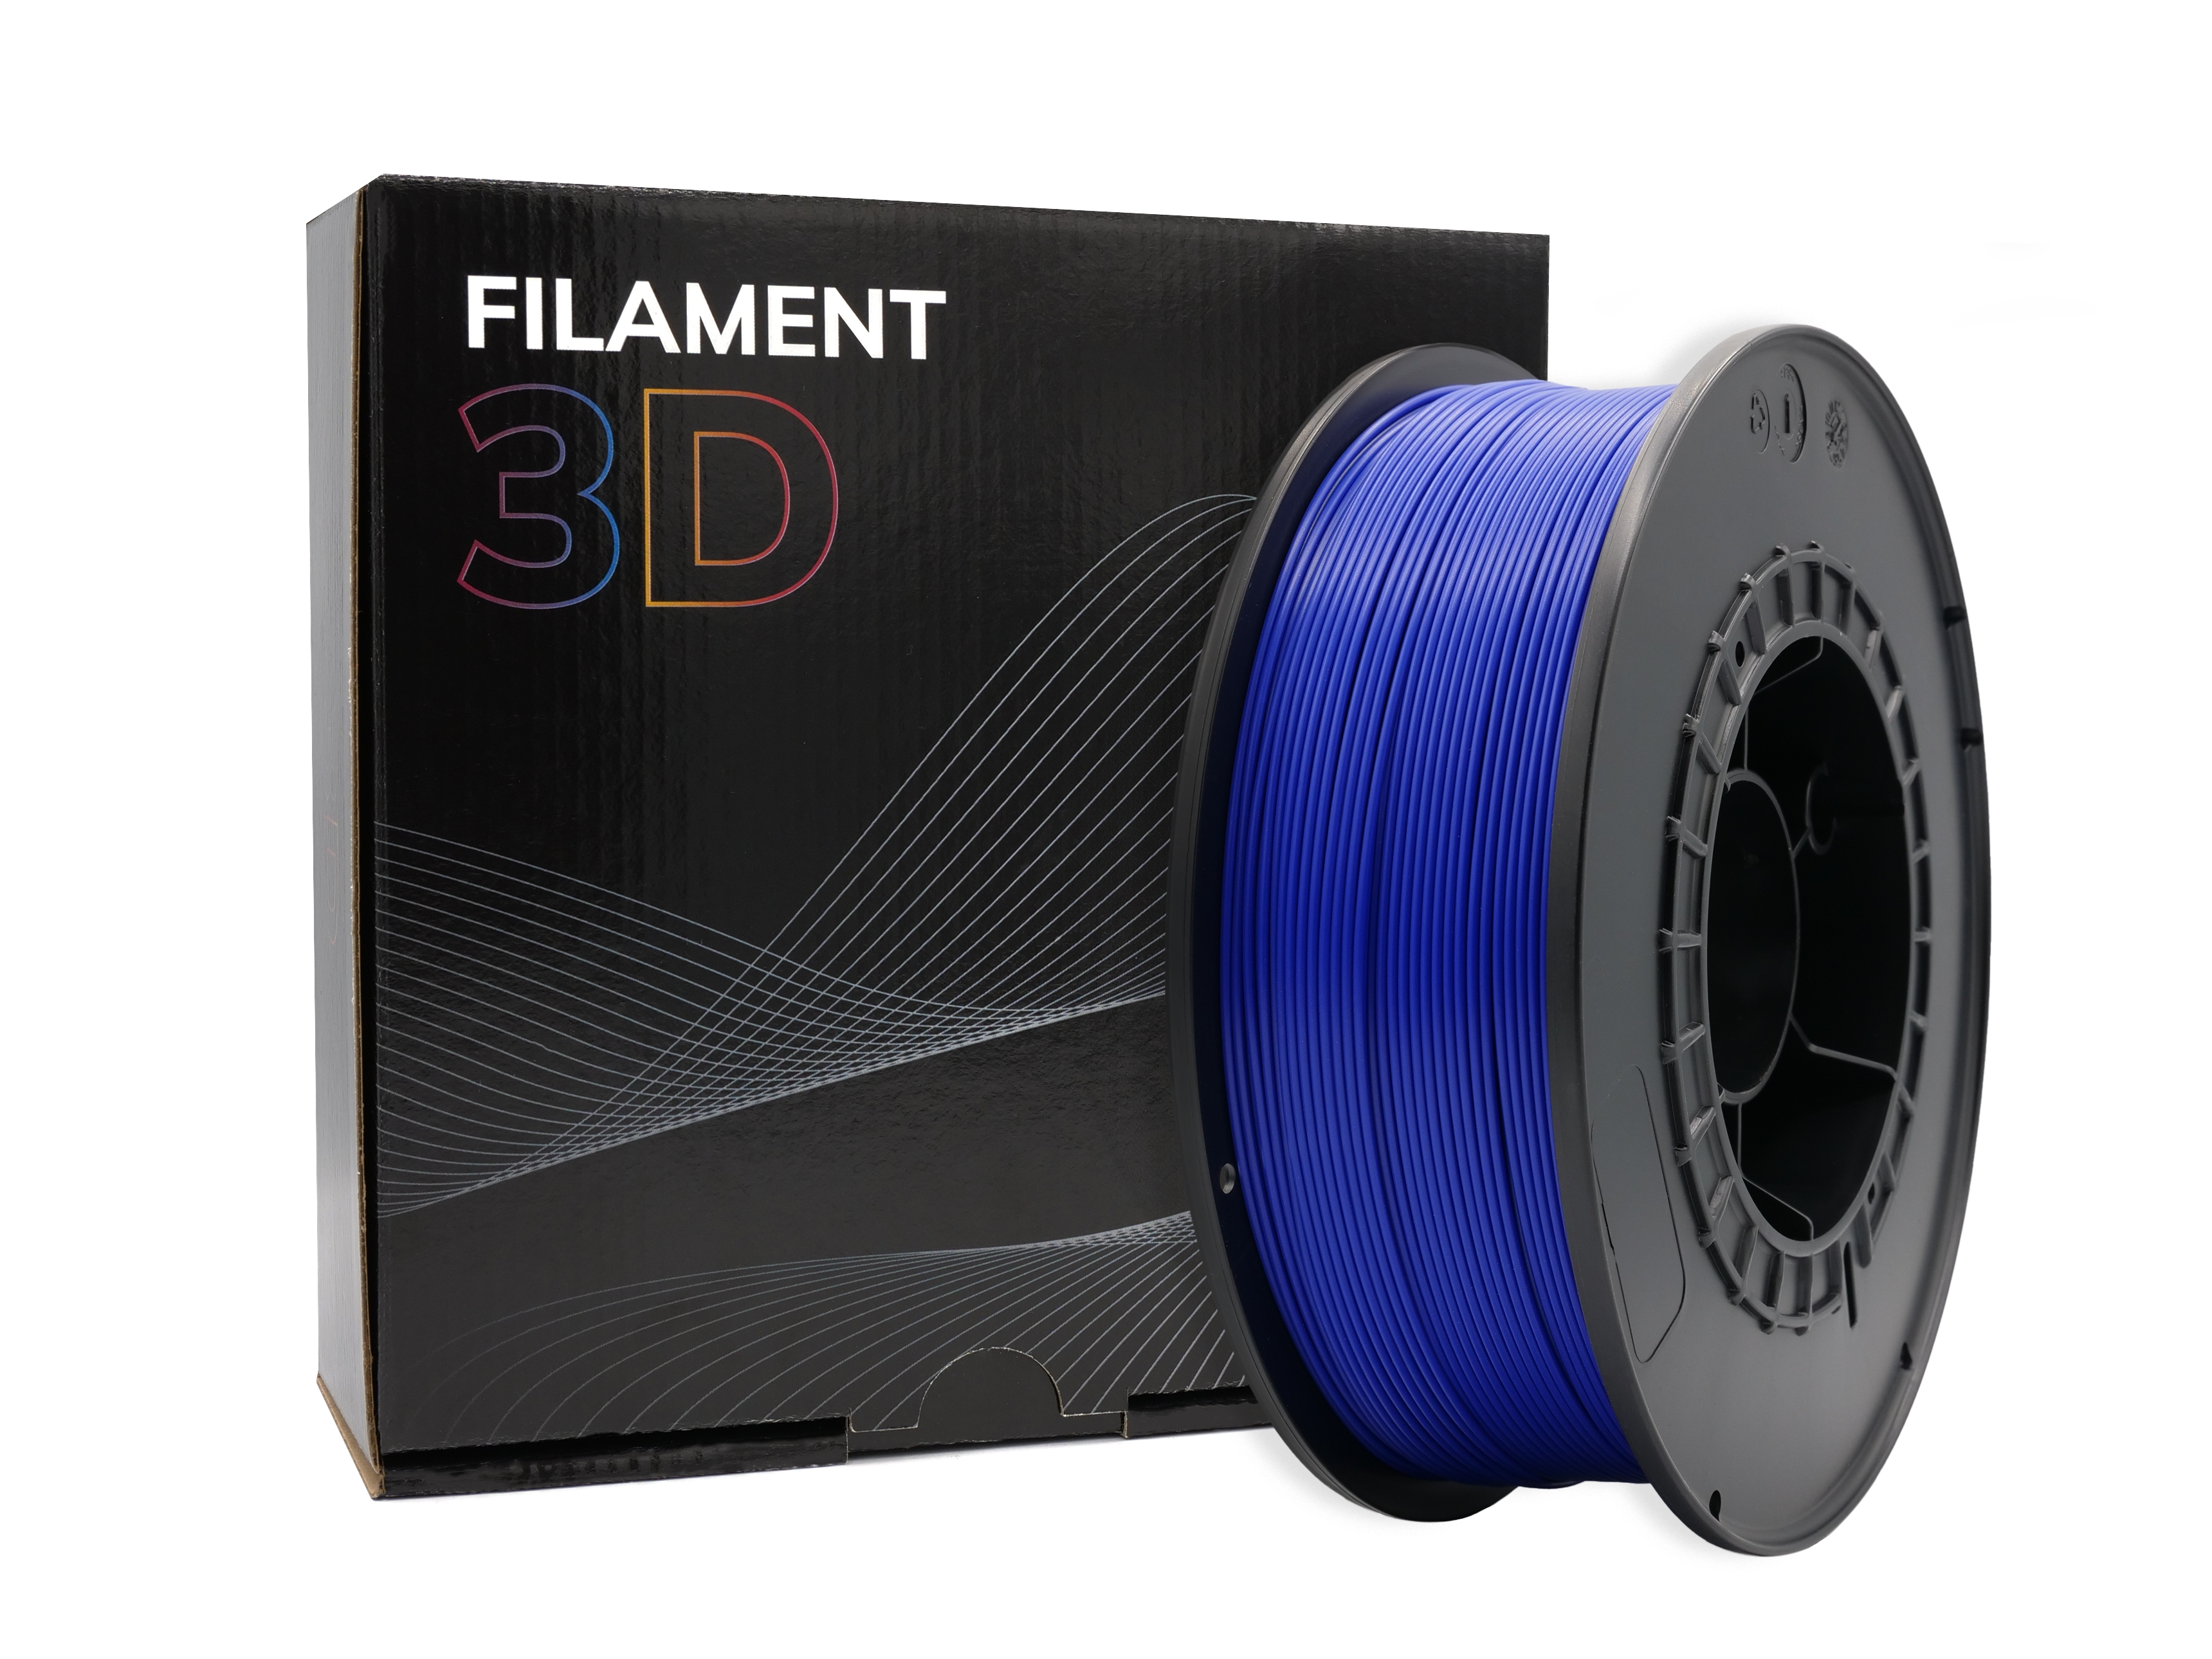 Filament PLA 3D - Diamètre 1.75mm - Bobine 1kg - Couleur Bleu Nuit